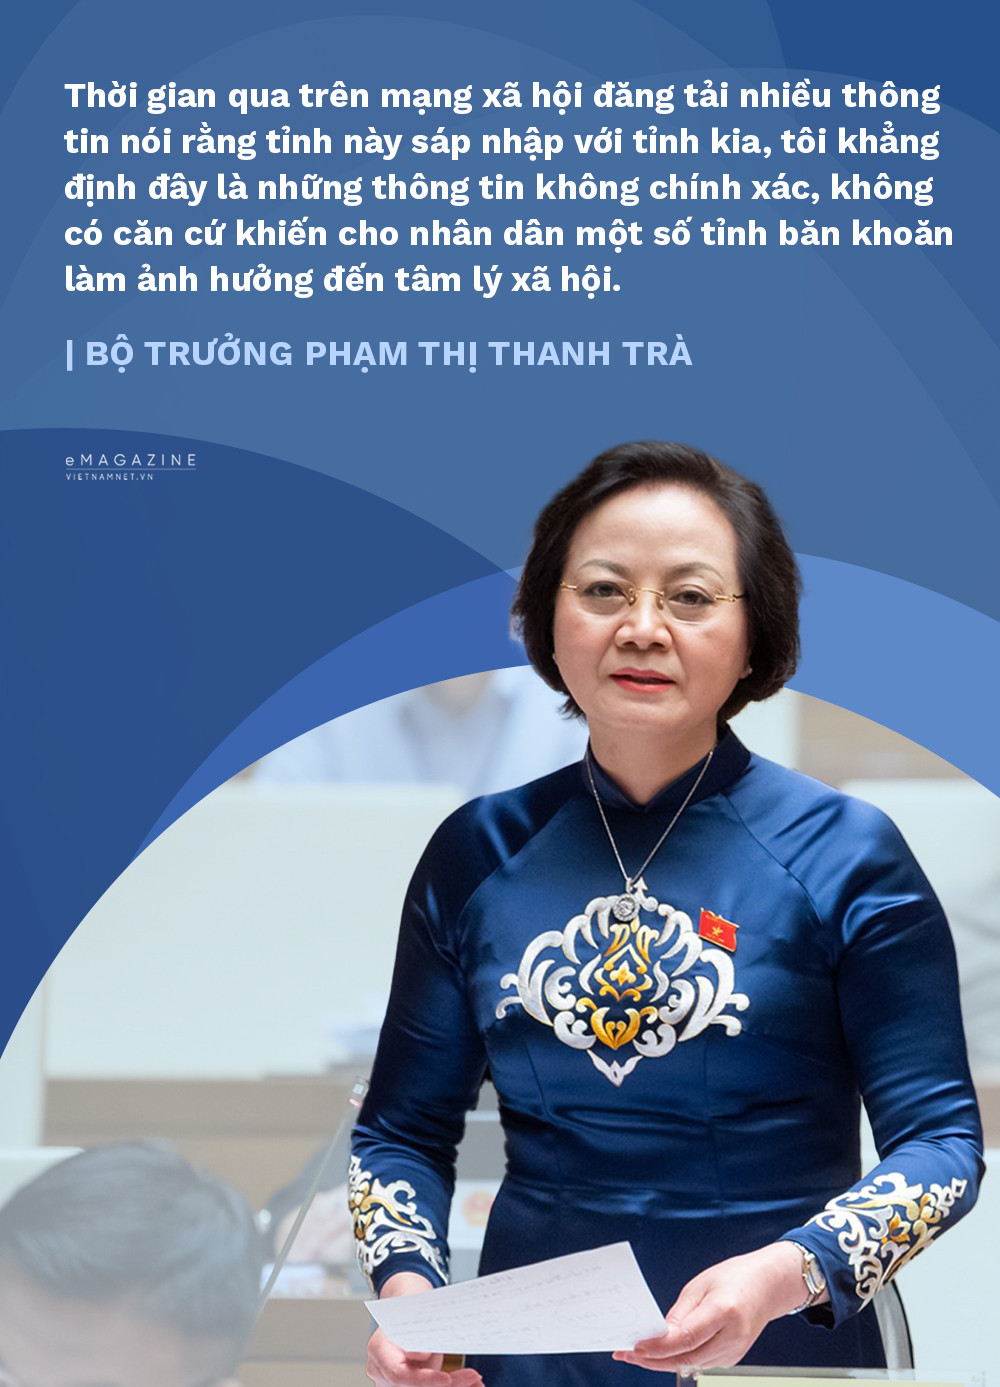 View - Bộ trưởng Phạm Thị Thanh Trà: Chỉ sắp xếp huyện xã, chưa sáp nhập tỉnh thành nào